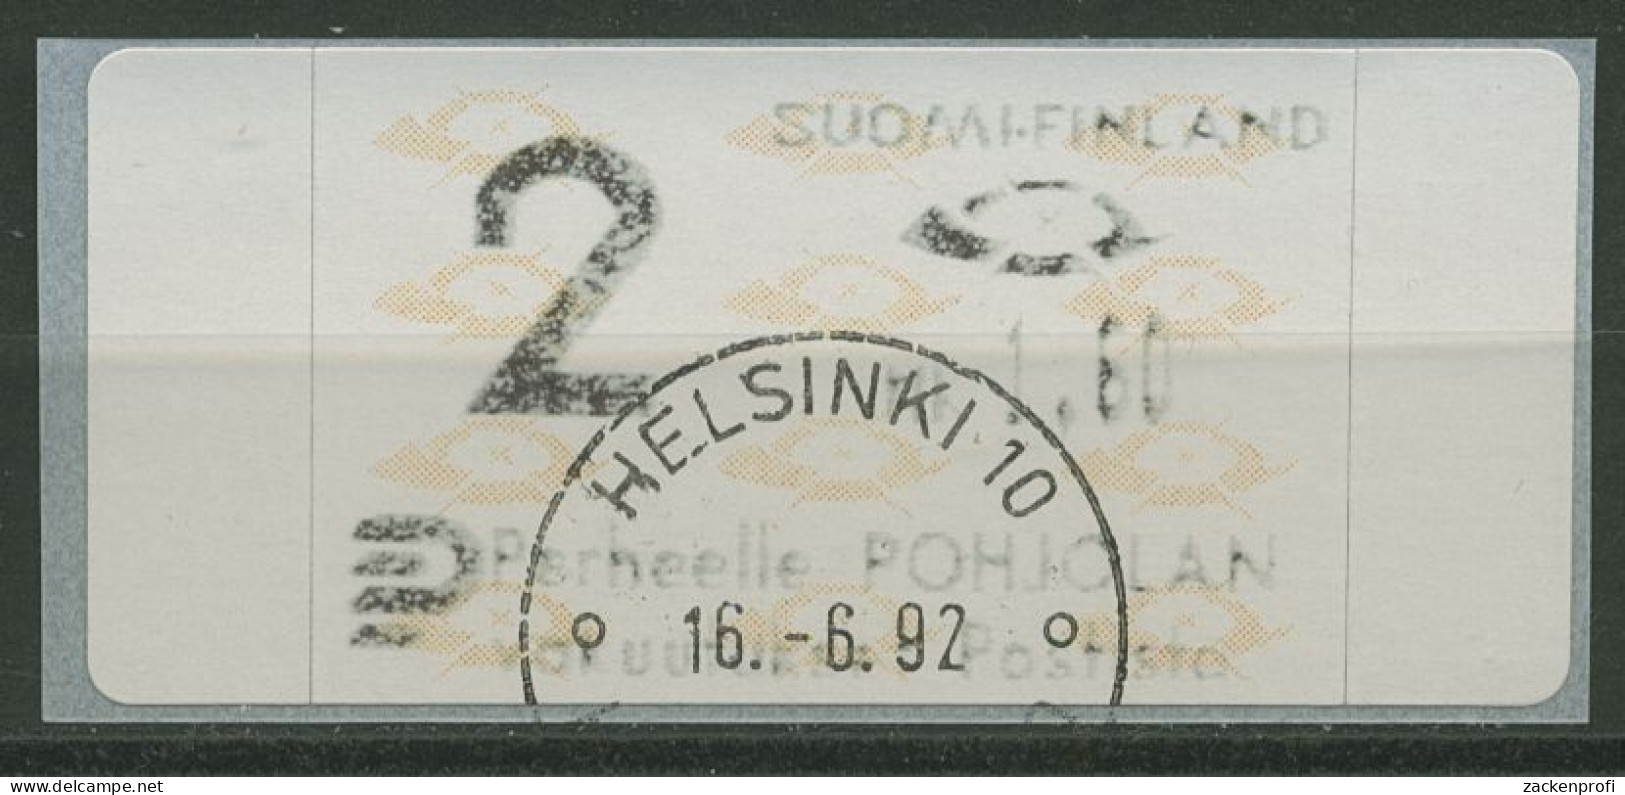 Finnland Automatenmarken 1992 Posthörner Einzelwert ATM 12.3 Z2 Gestempelt - Machine Labels [ATM]